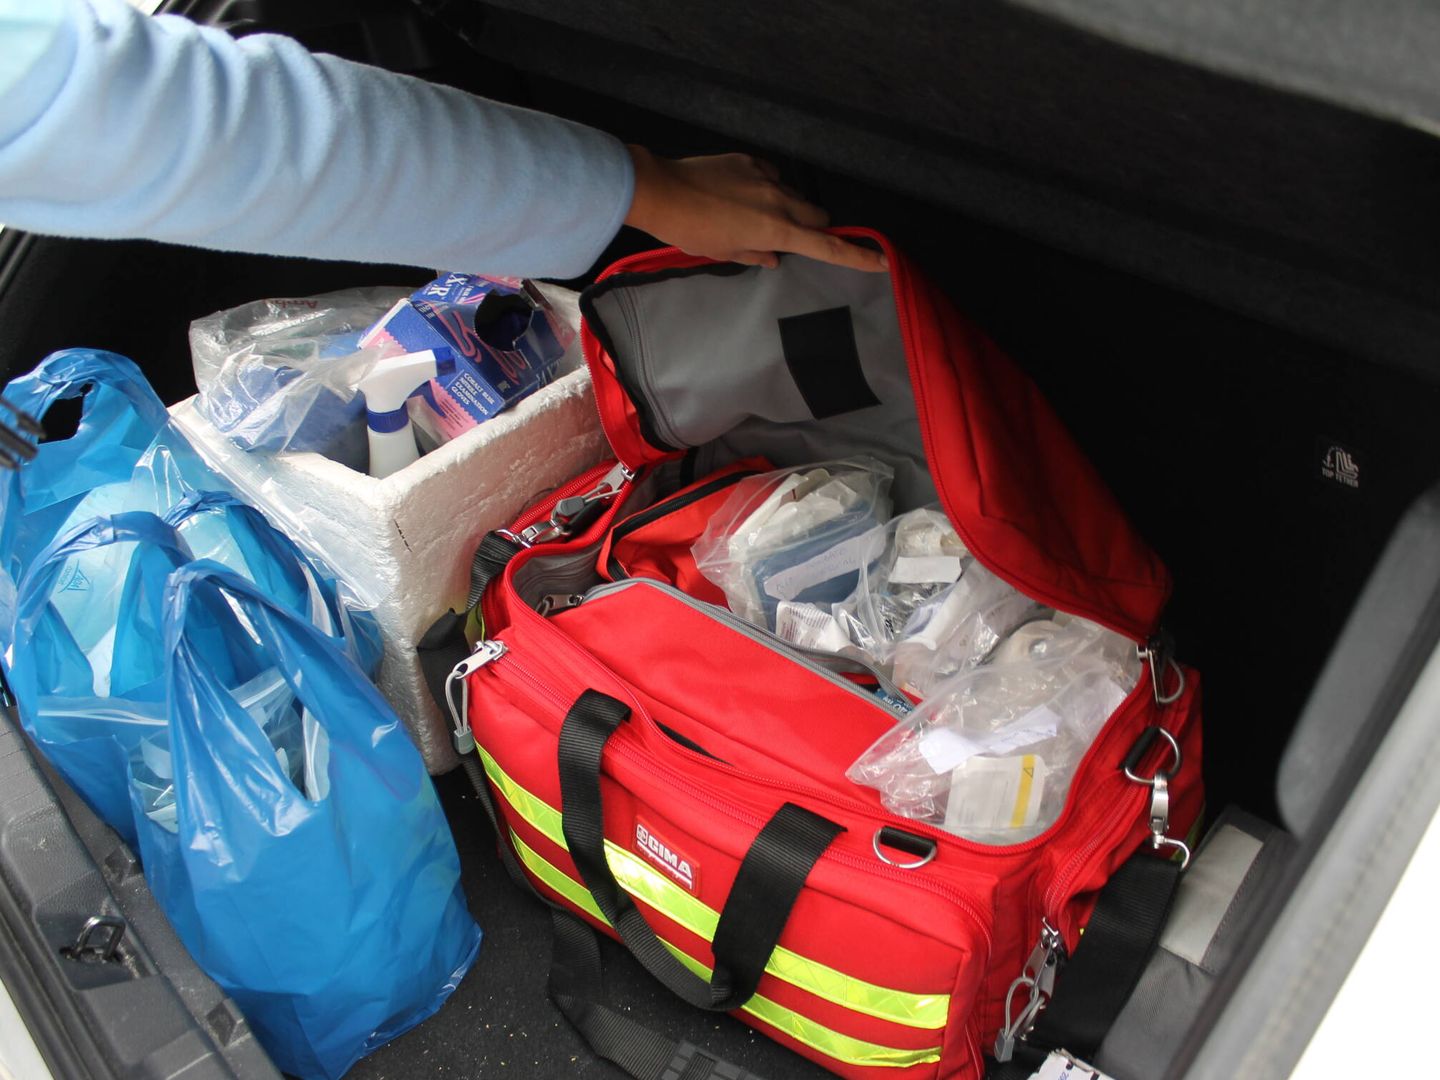 Kit de emergencia en el maletero del coche. (A.F.)